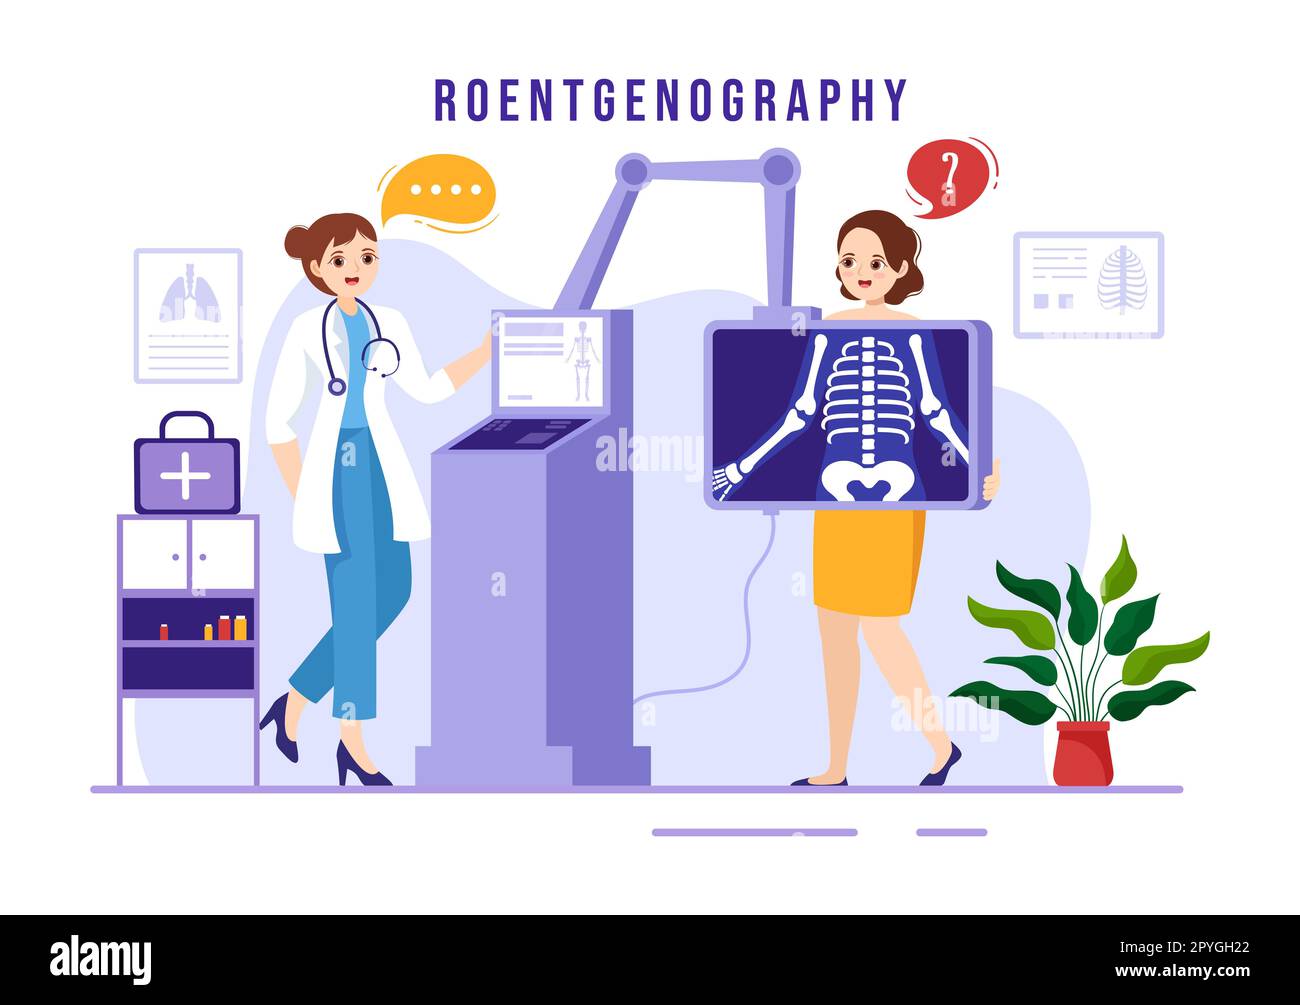 Röntgendarstellung mit Durchleuchtungs-Body-Check-Verfahren, Röntgen-Scanning oder Röntgen in Health Care Flat Cartoon handgezeichnete Vorlagen Stockfoto